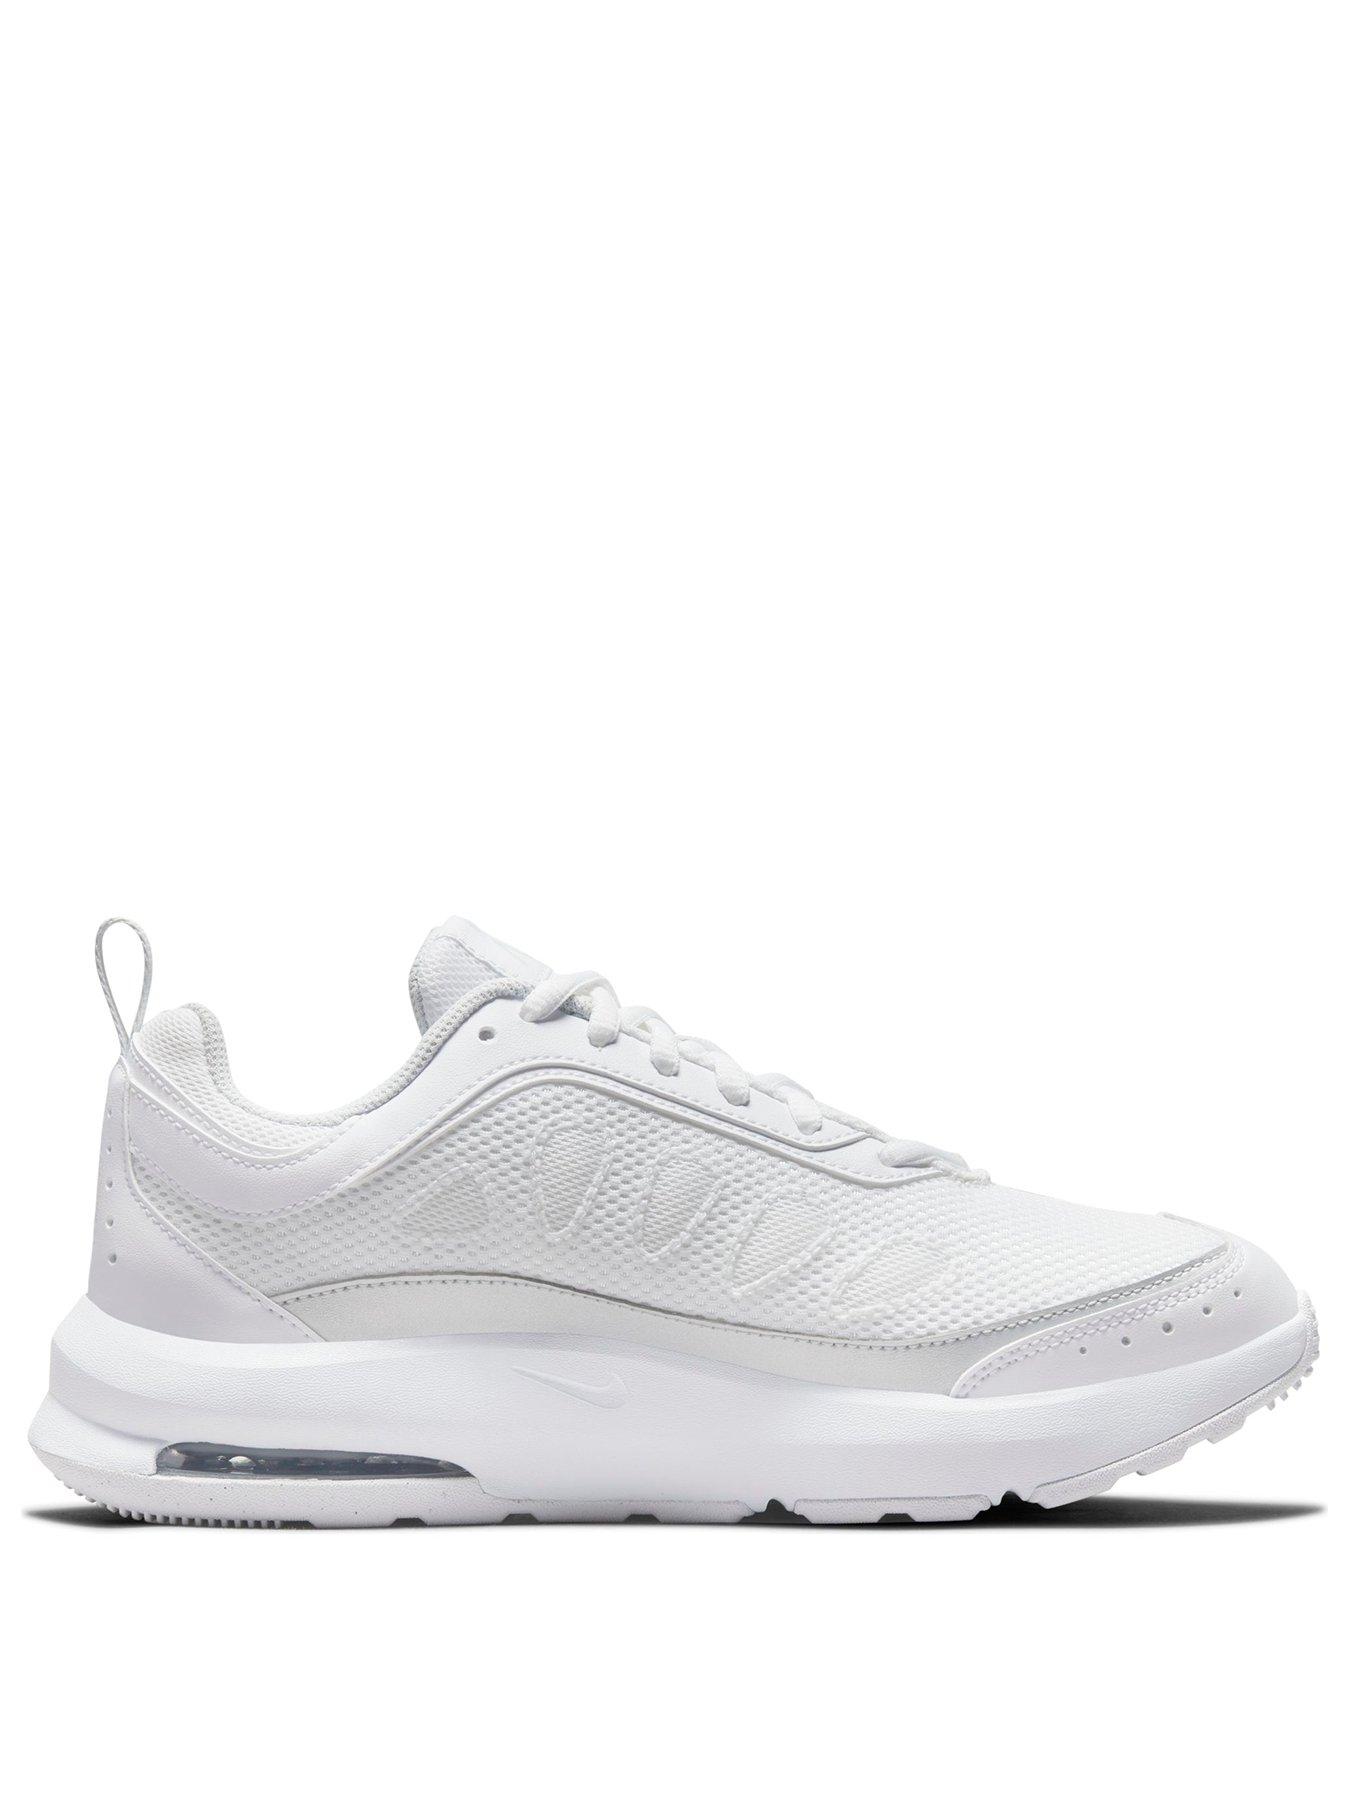 Nike Air Max Ap - White/Silver